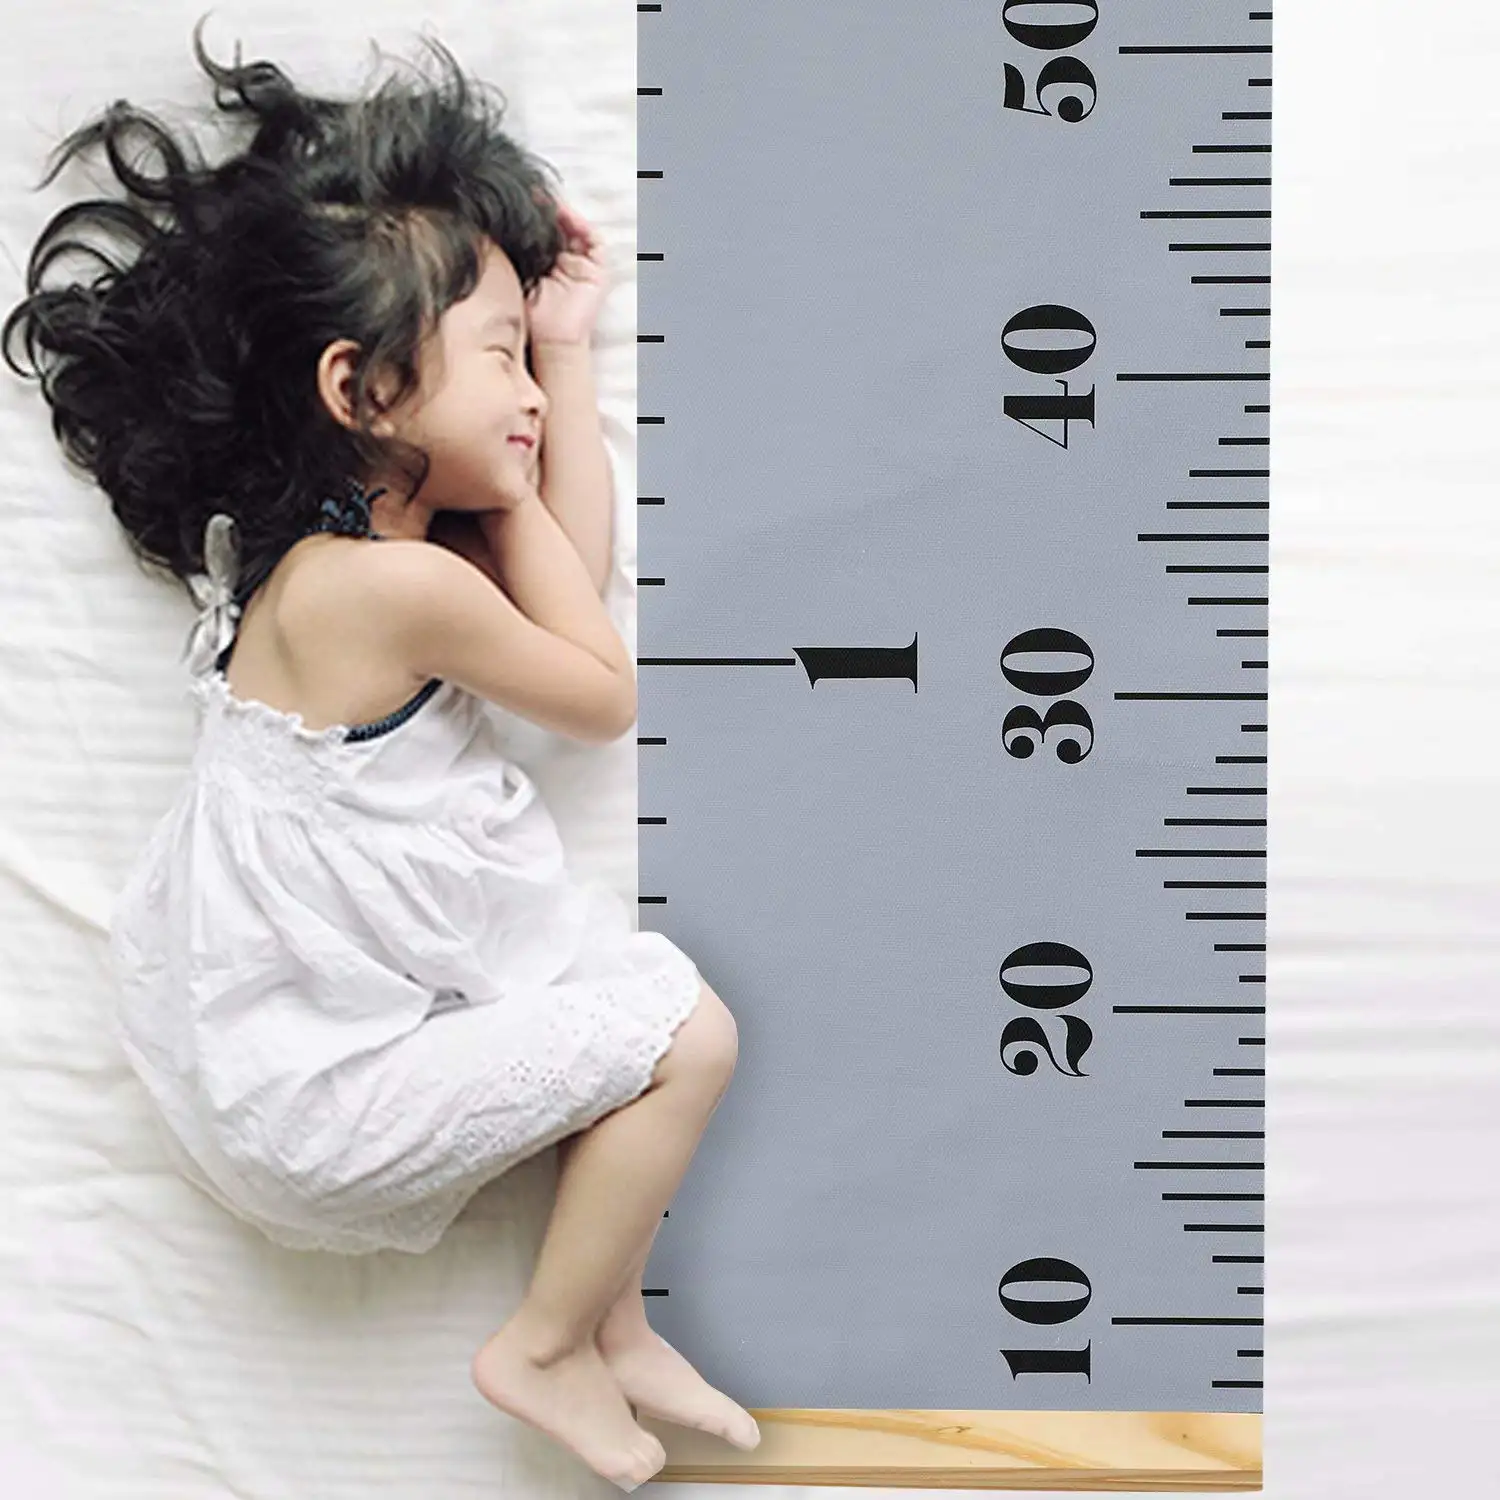 Wood Photo Frame Fabric Canvas Height Measuring Ruler Kids Toy 7.9 x79 Growth Chart von Baby zu Adult für Baby Nursery Decor